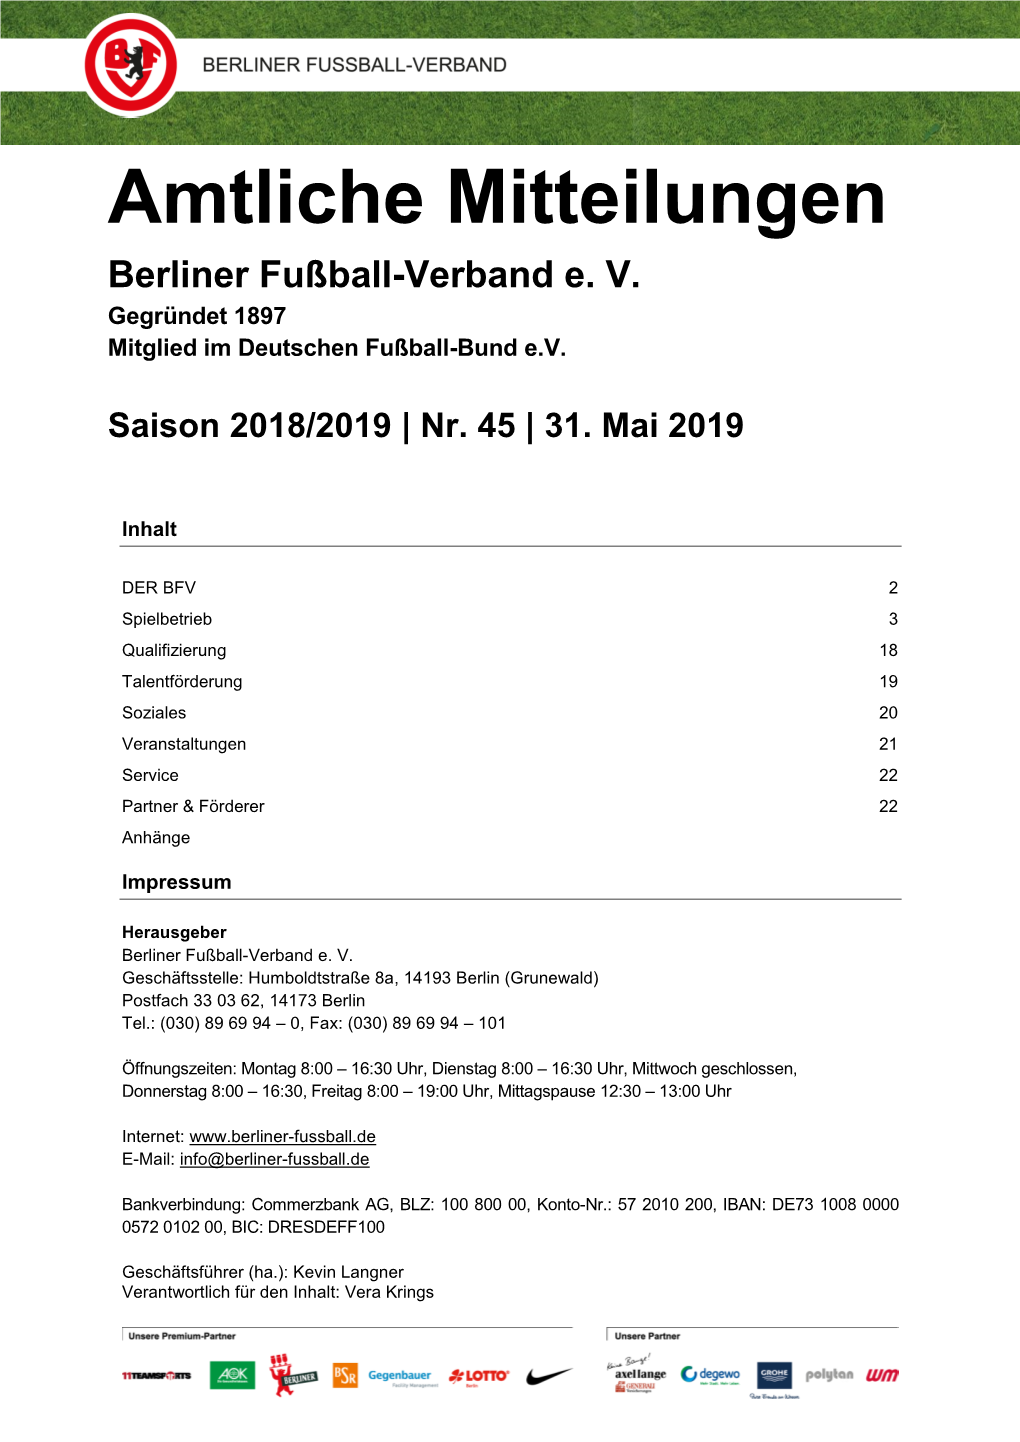 Amtliche Mitteilungen Berliner Fußball-Verband E